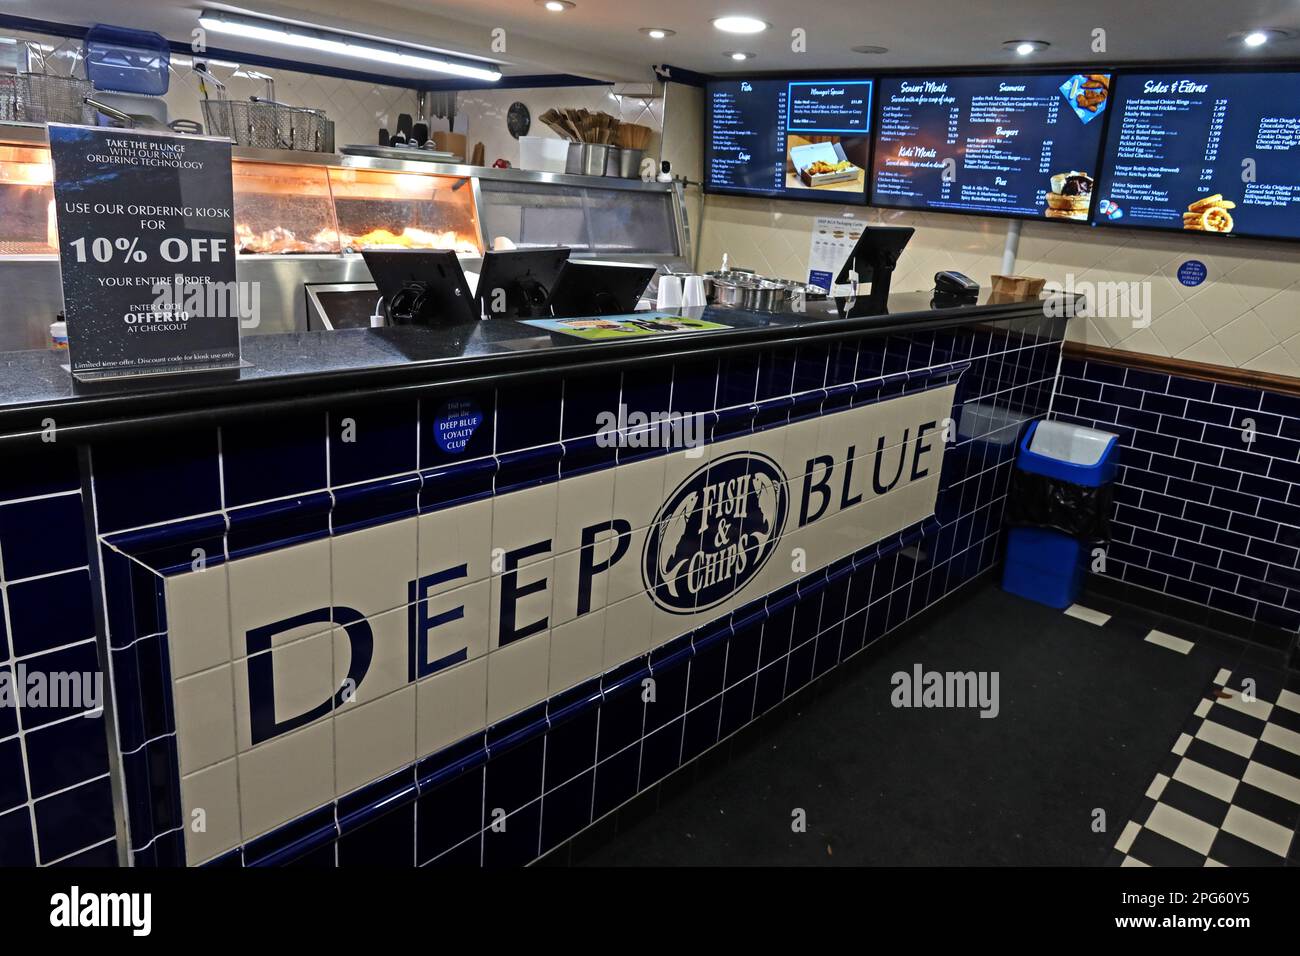 Tecnologia di ordinazione Deep Blue chippy, 10% di sconto, Fish bar, 7-8, Bridge St, Godalming, Waverley, Surrey, Inghilterra, Regno Unito, GU7 1HY Foto Stock